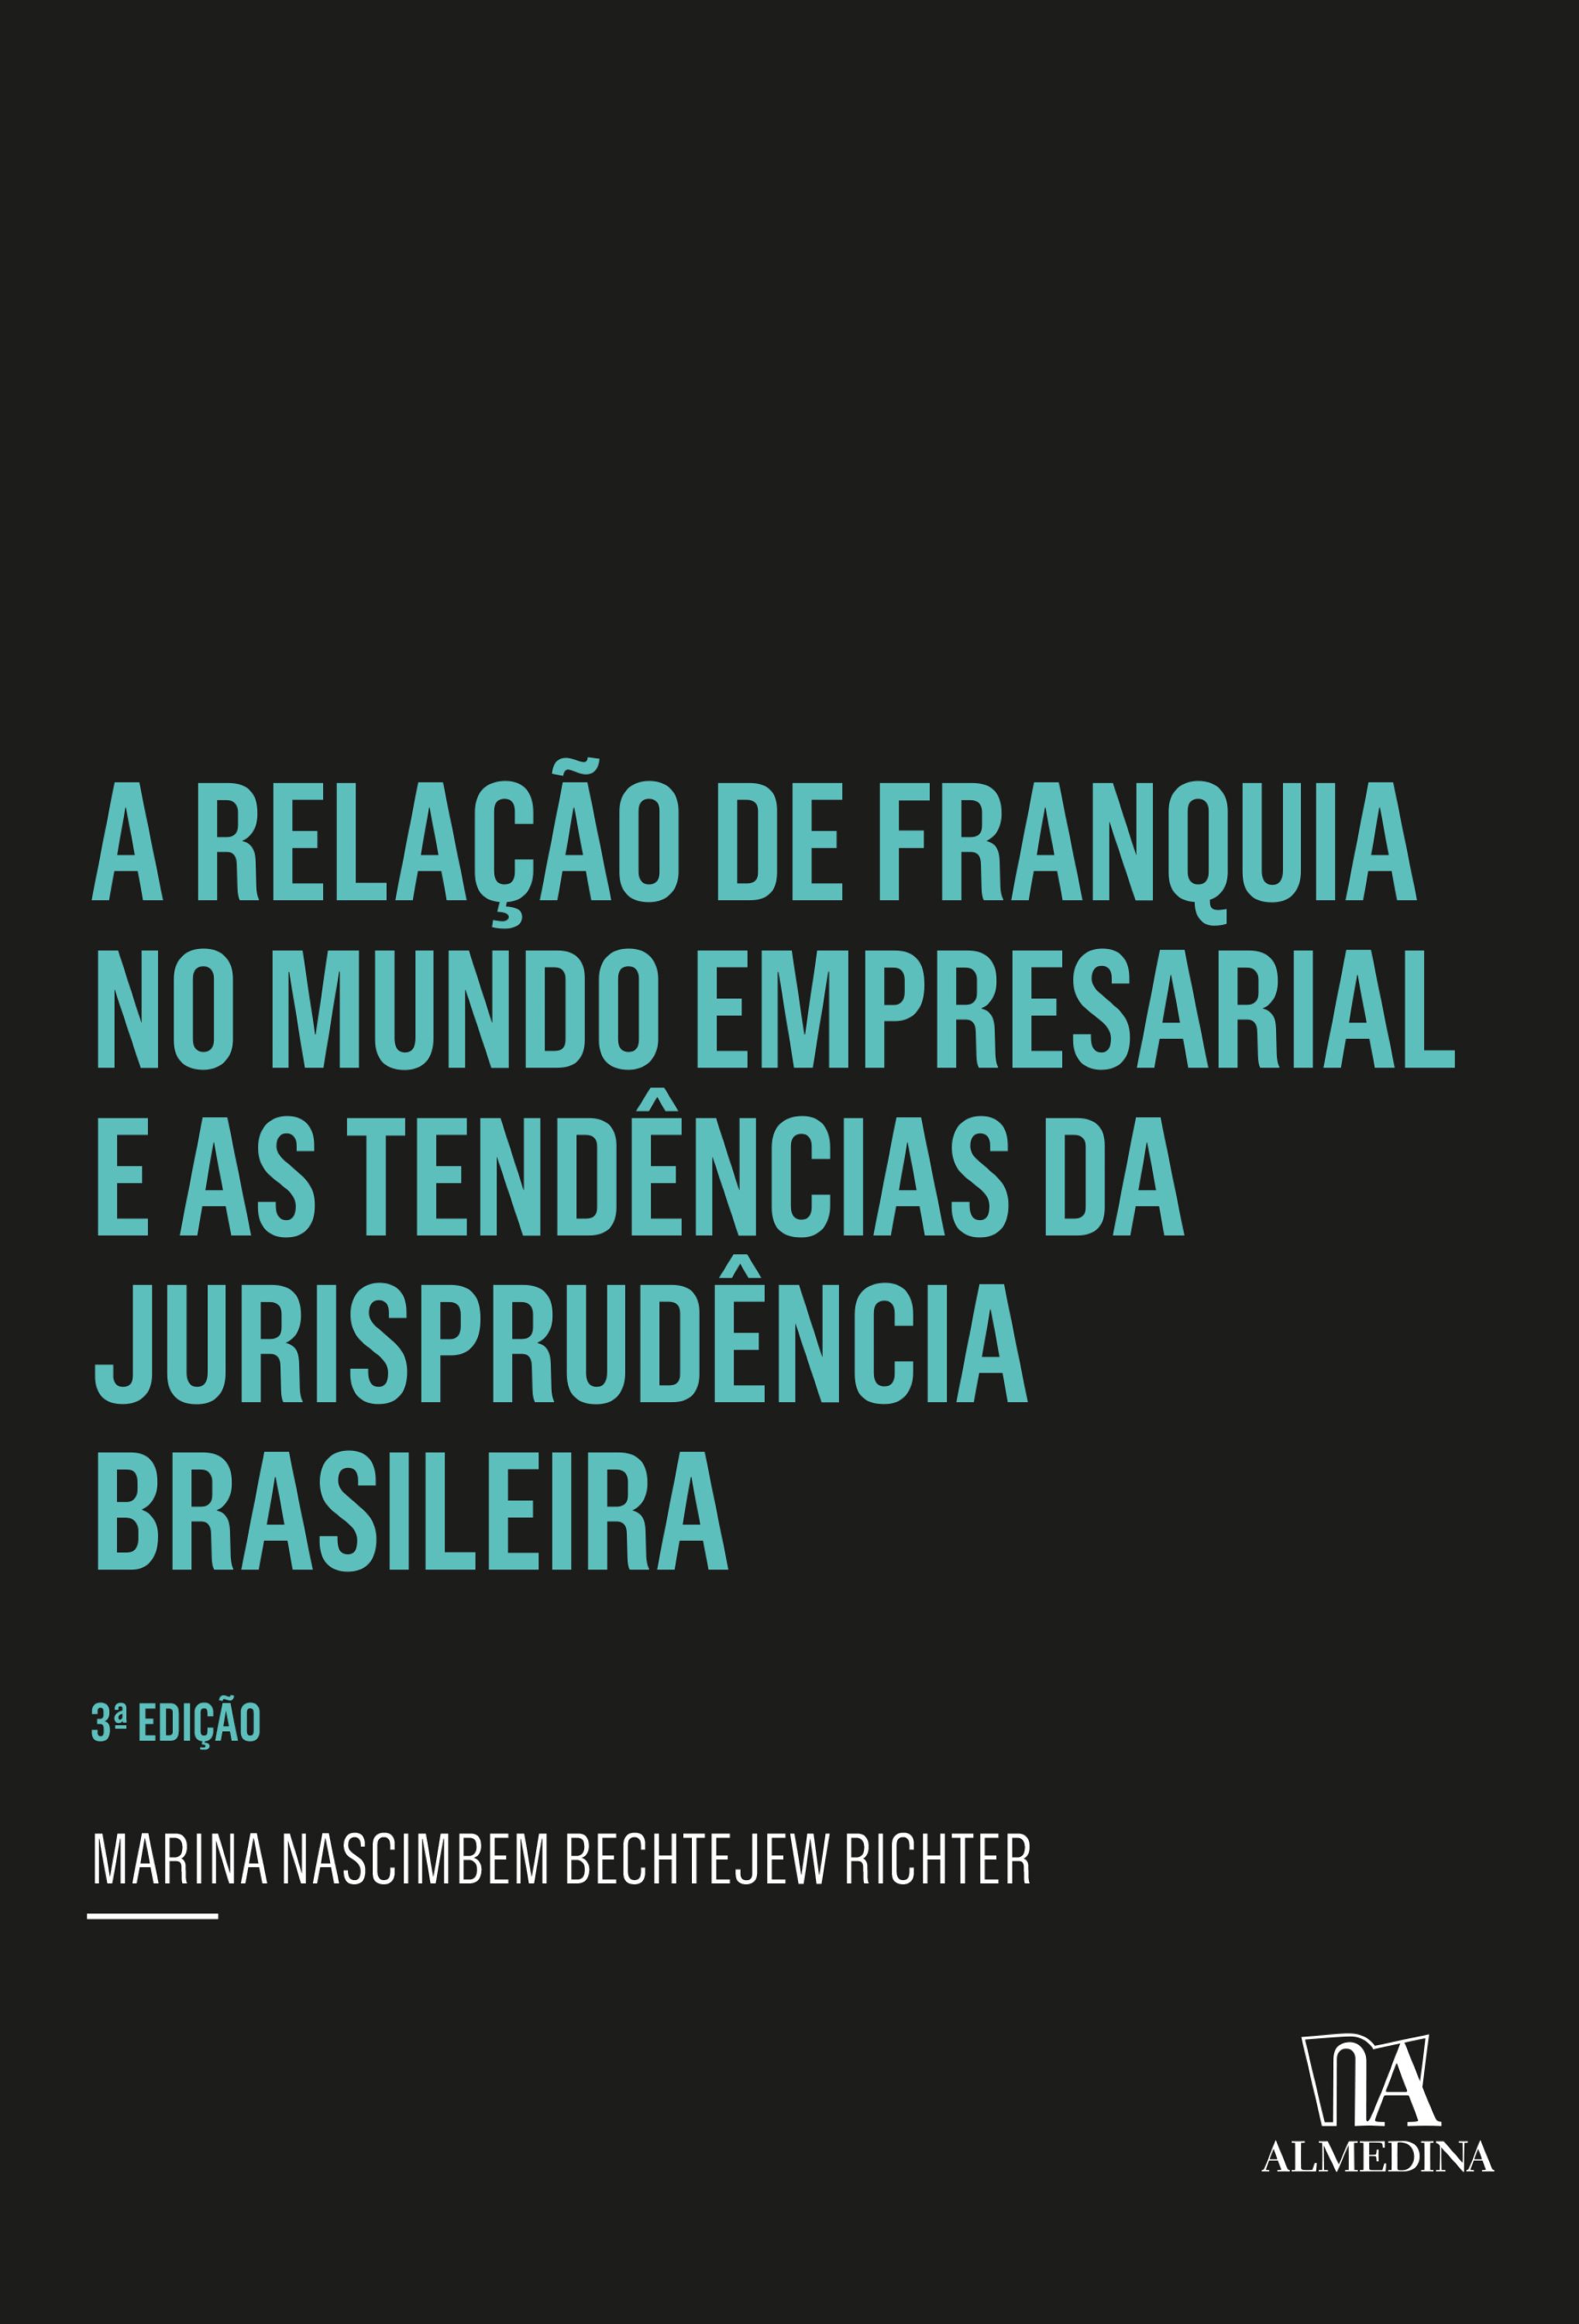 A Relação de Franquia no Mundo Empresarial e as Tendências da Jurisprudência Brasileira